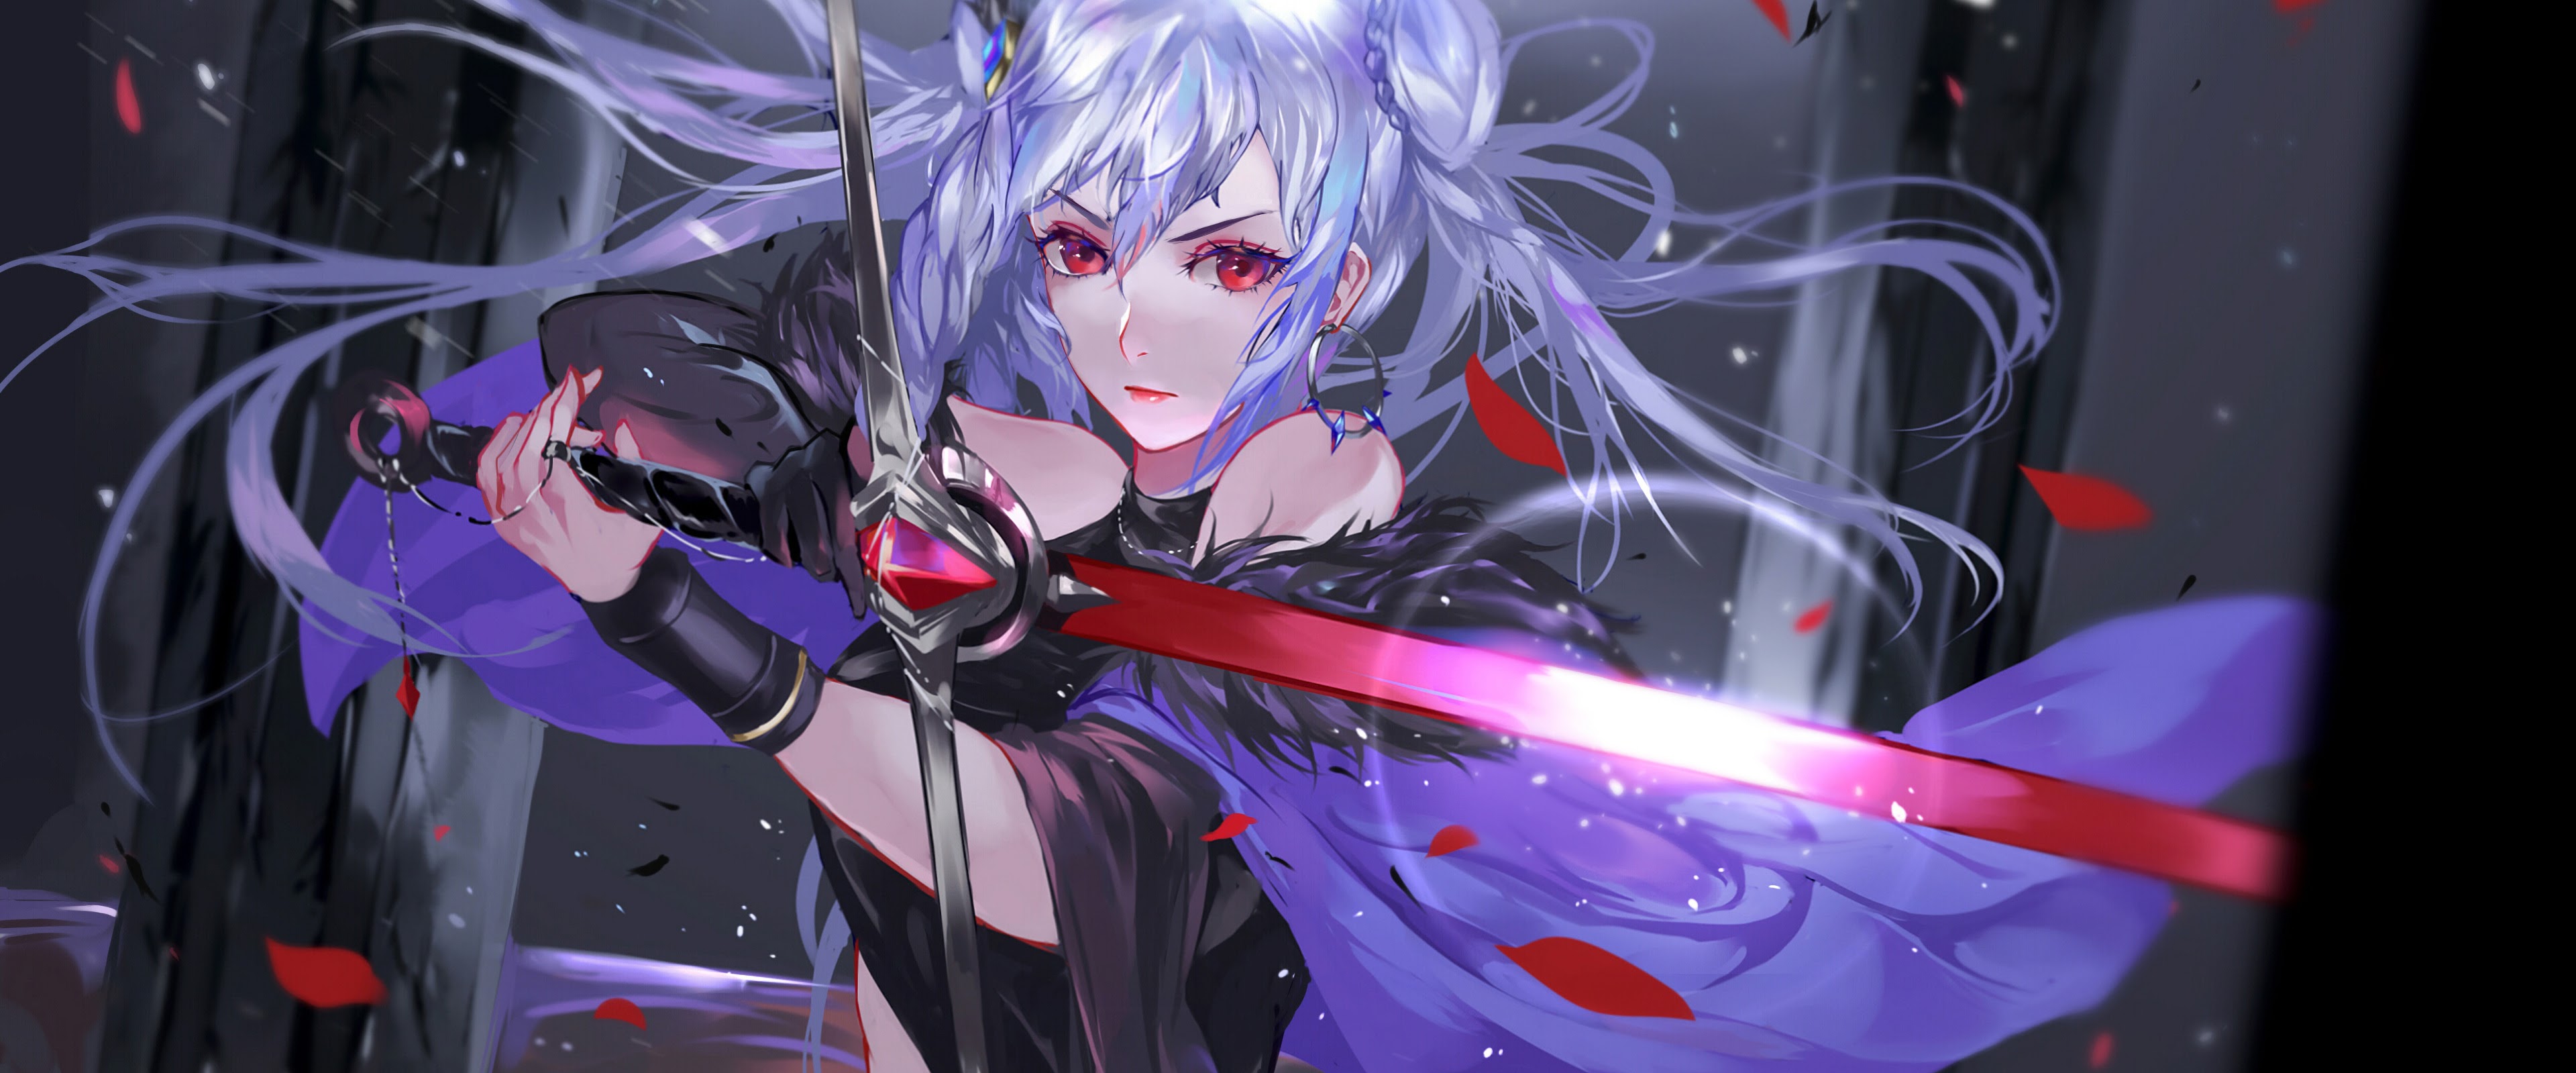 Anime, Girl, Warrior, Fantasy, Sword, 4K, 3840x2160, #11 ...